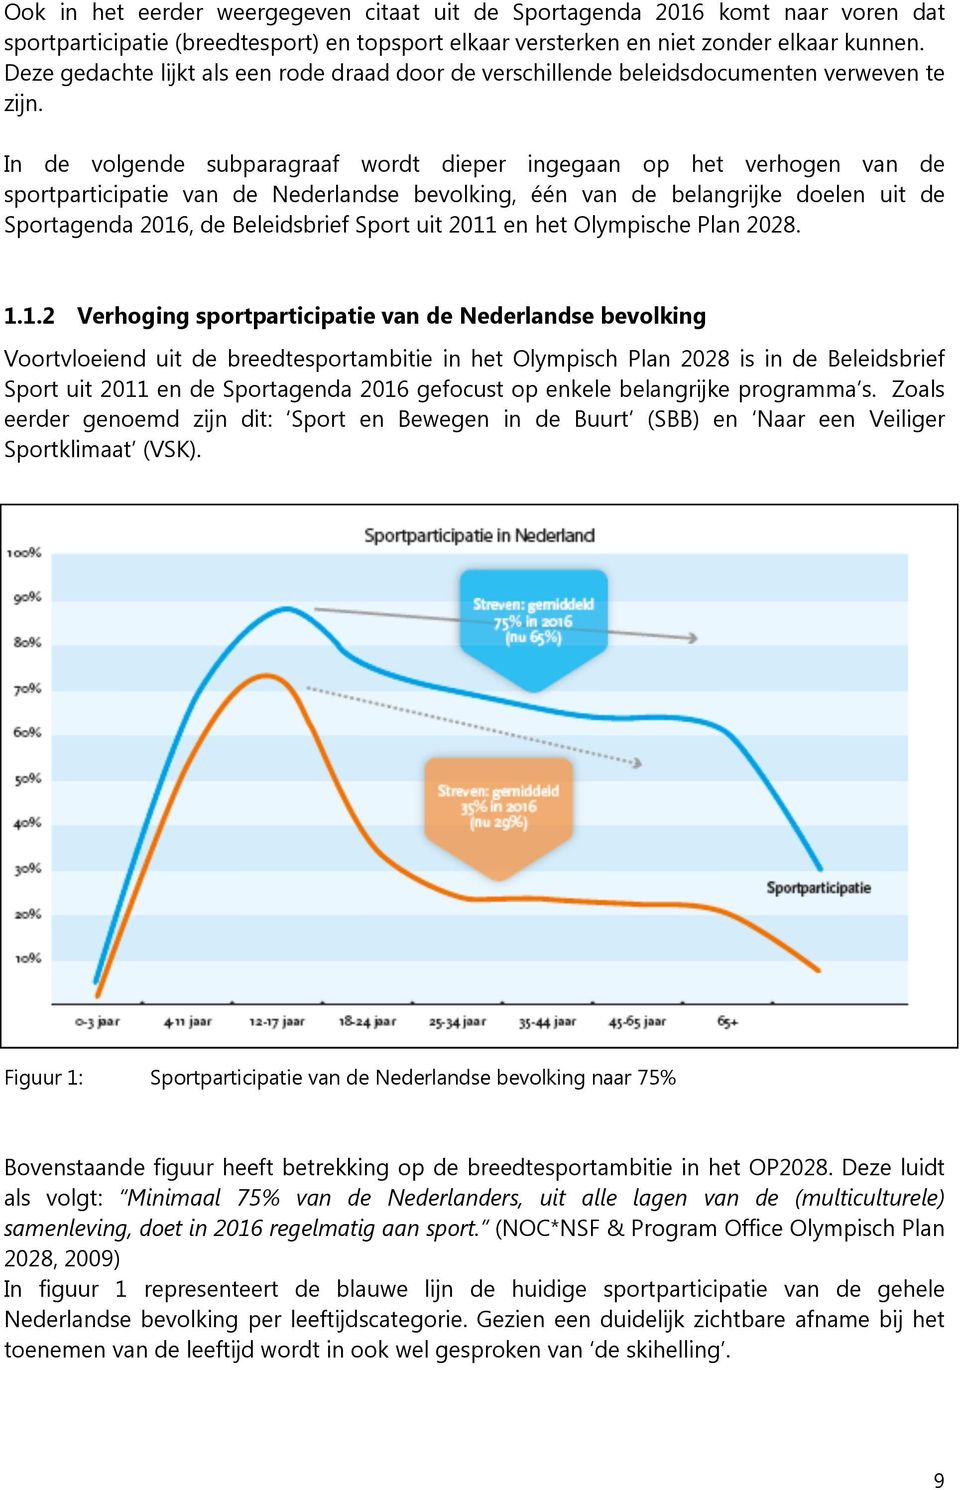 In de volgende subparagraaf wordt dieper ingegaan op het verhogen van de sportparticipatie van de Nederlandse bevolking, één van de belangrijke doelen uit de Sportagenda 2016, de Beleidsbrief Sport